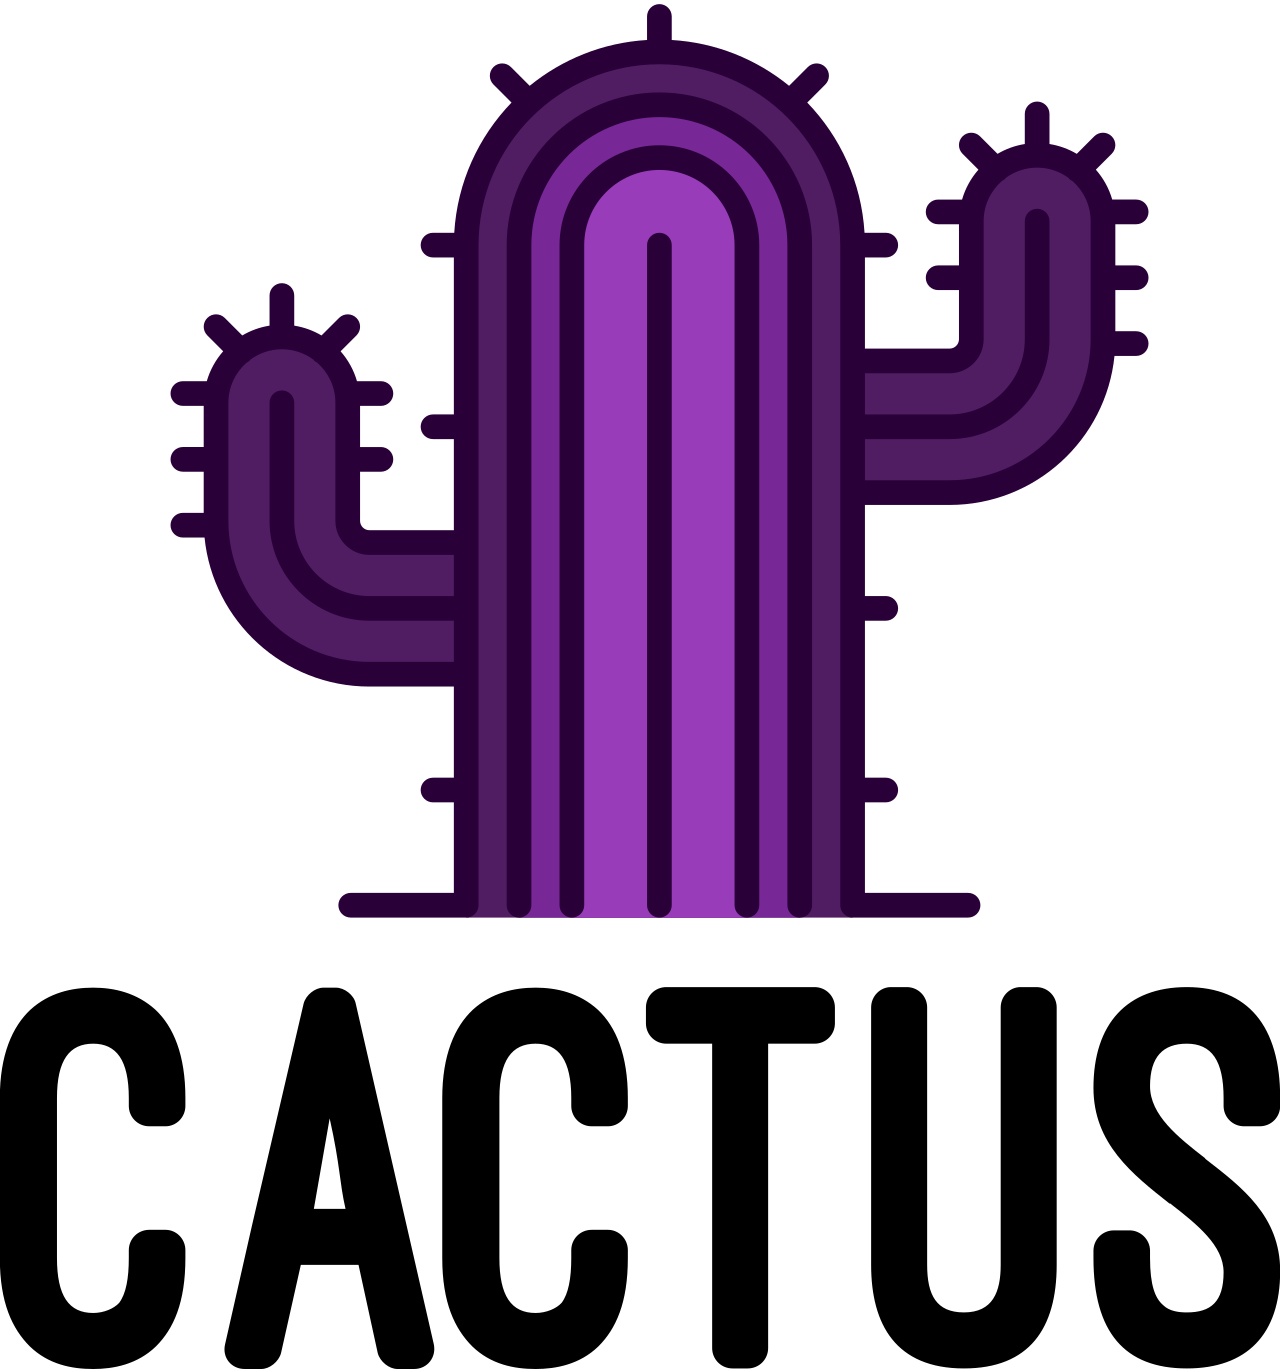 Cactus's logo